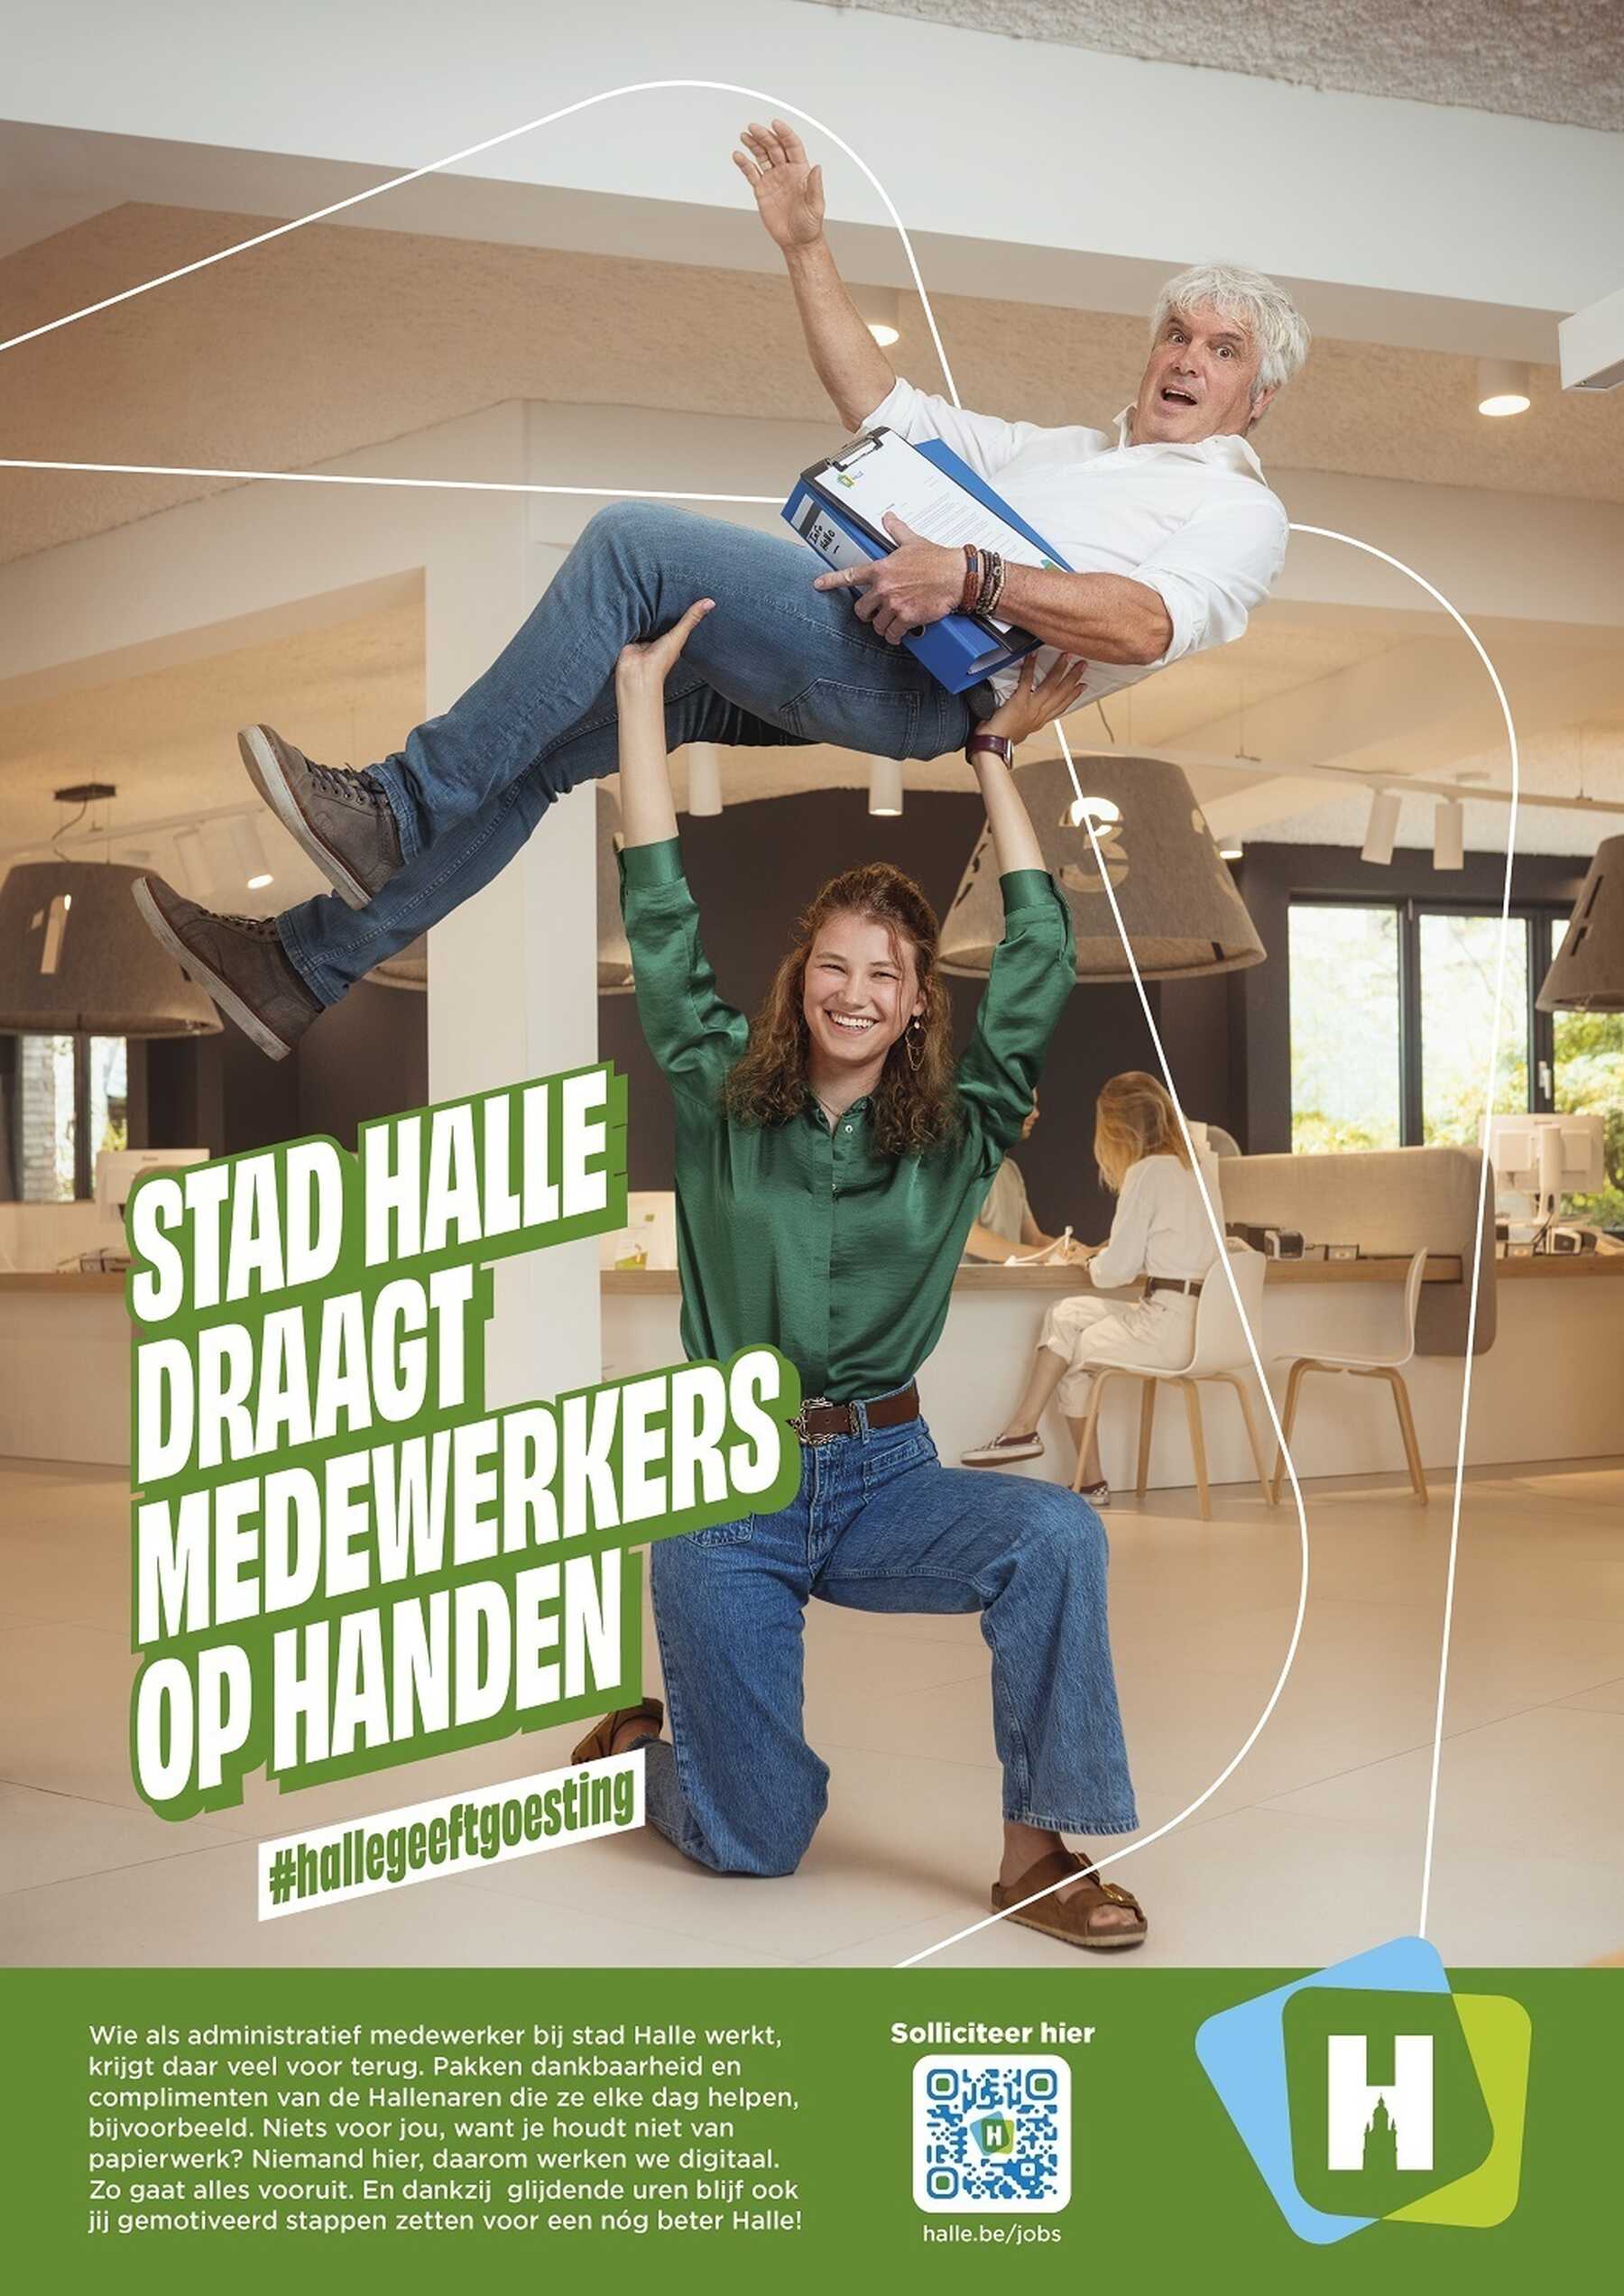 Stad Halle draagt medewerkers op handen, een luik van onze employer branding campagne